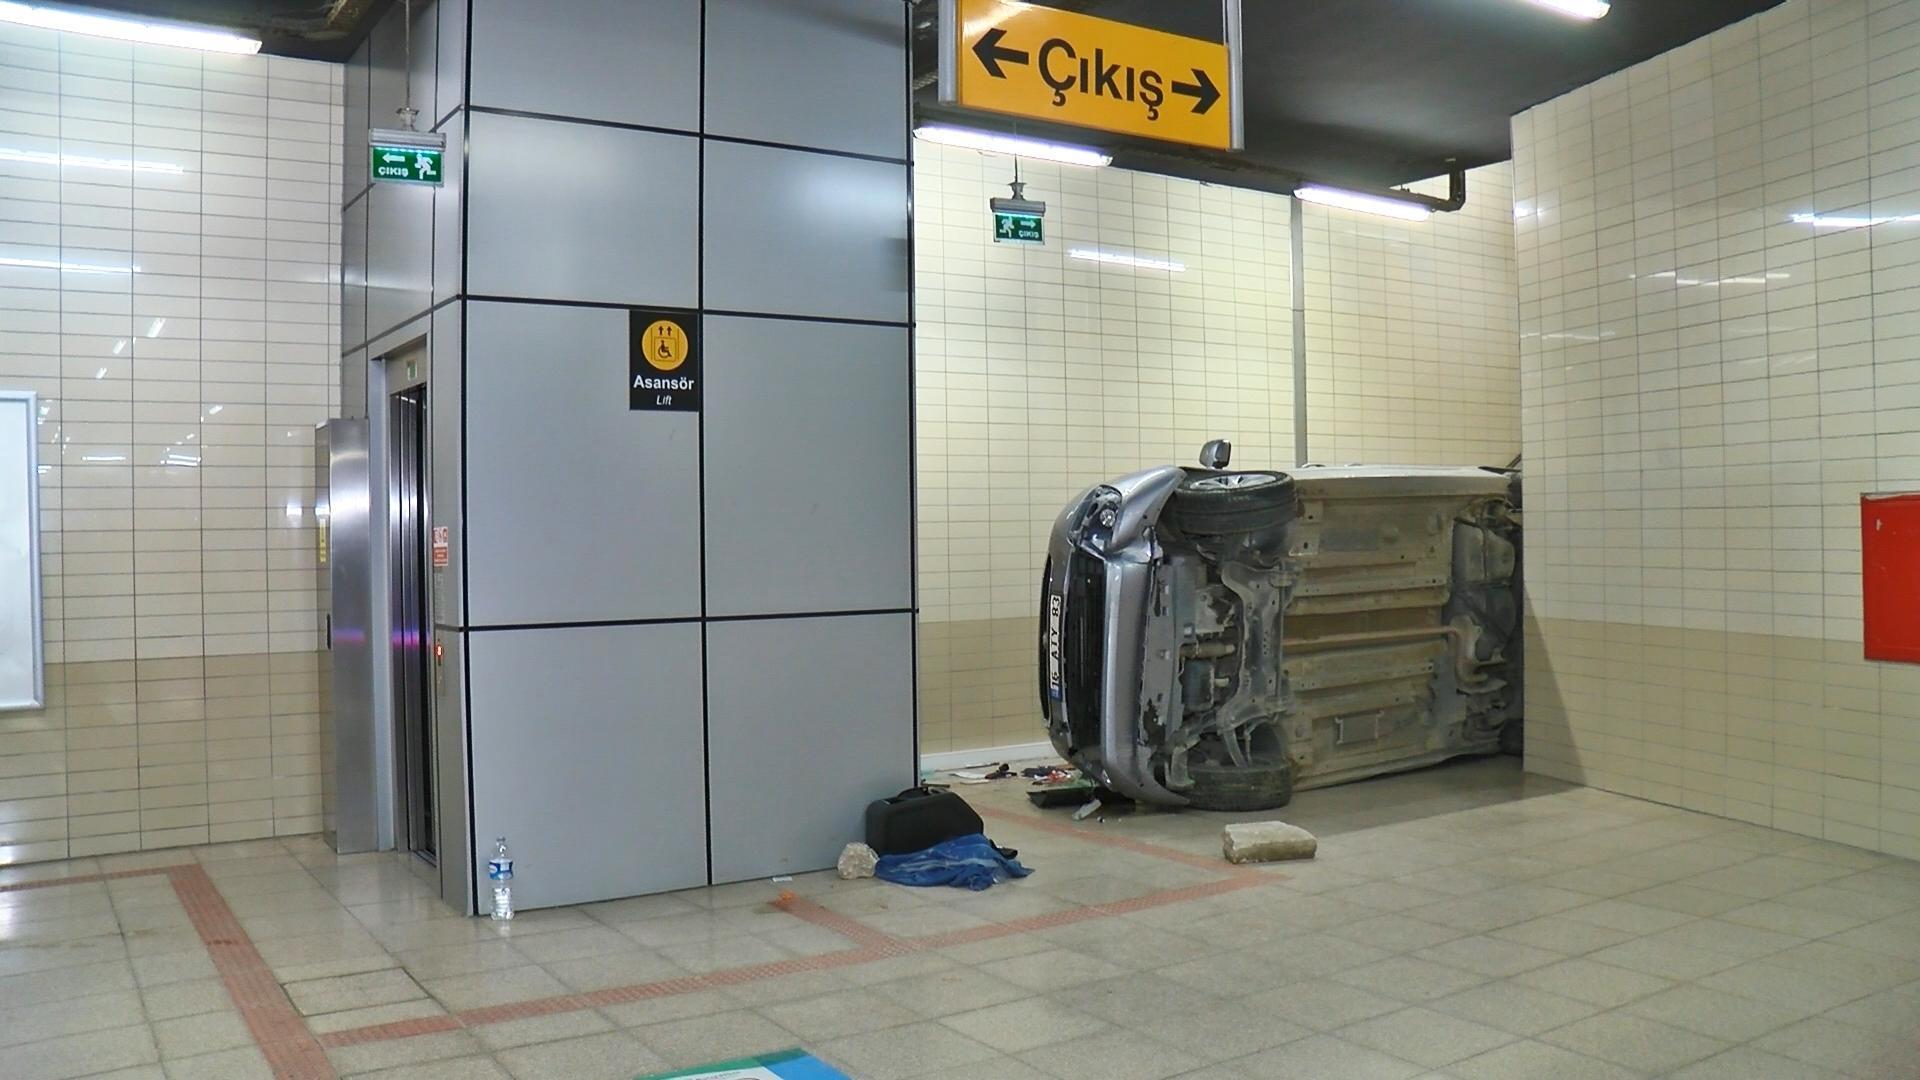 Araç metro istasyonu alt geçidine uçtu; yeni yaşını kutlayan Davut öldü, 2 yaralı